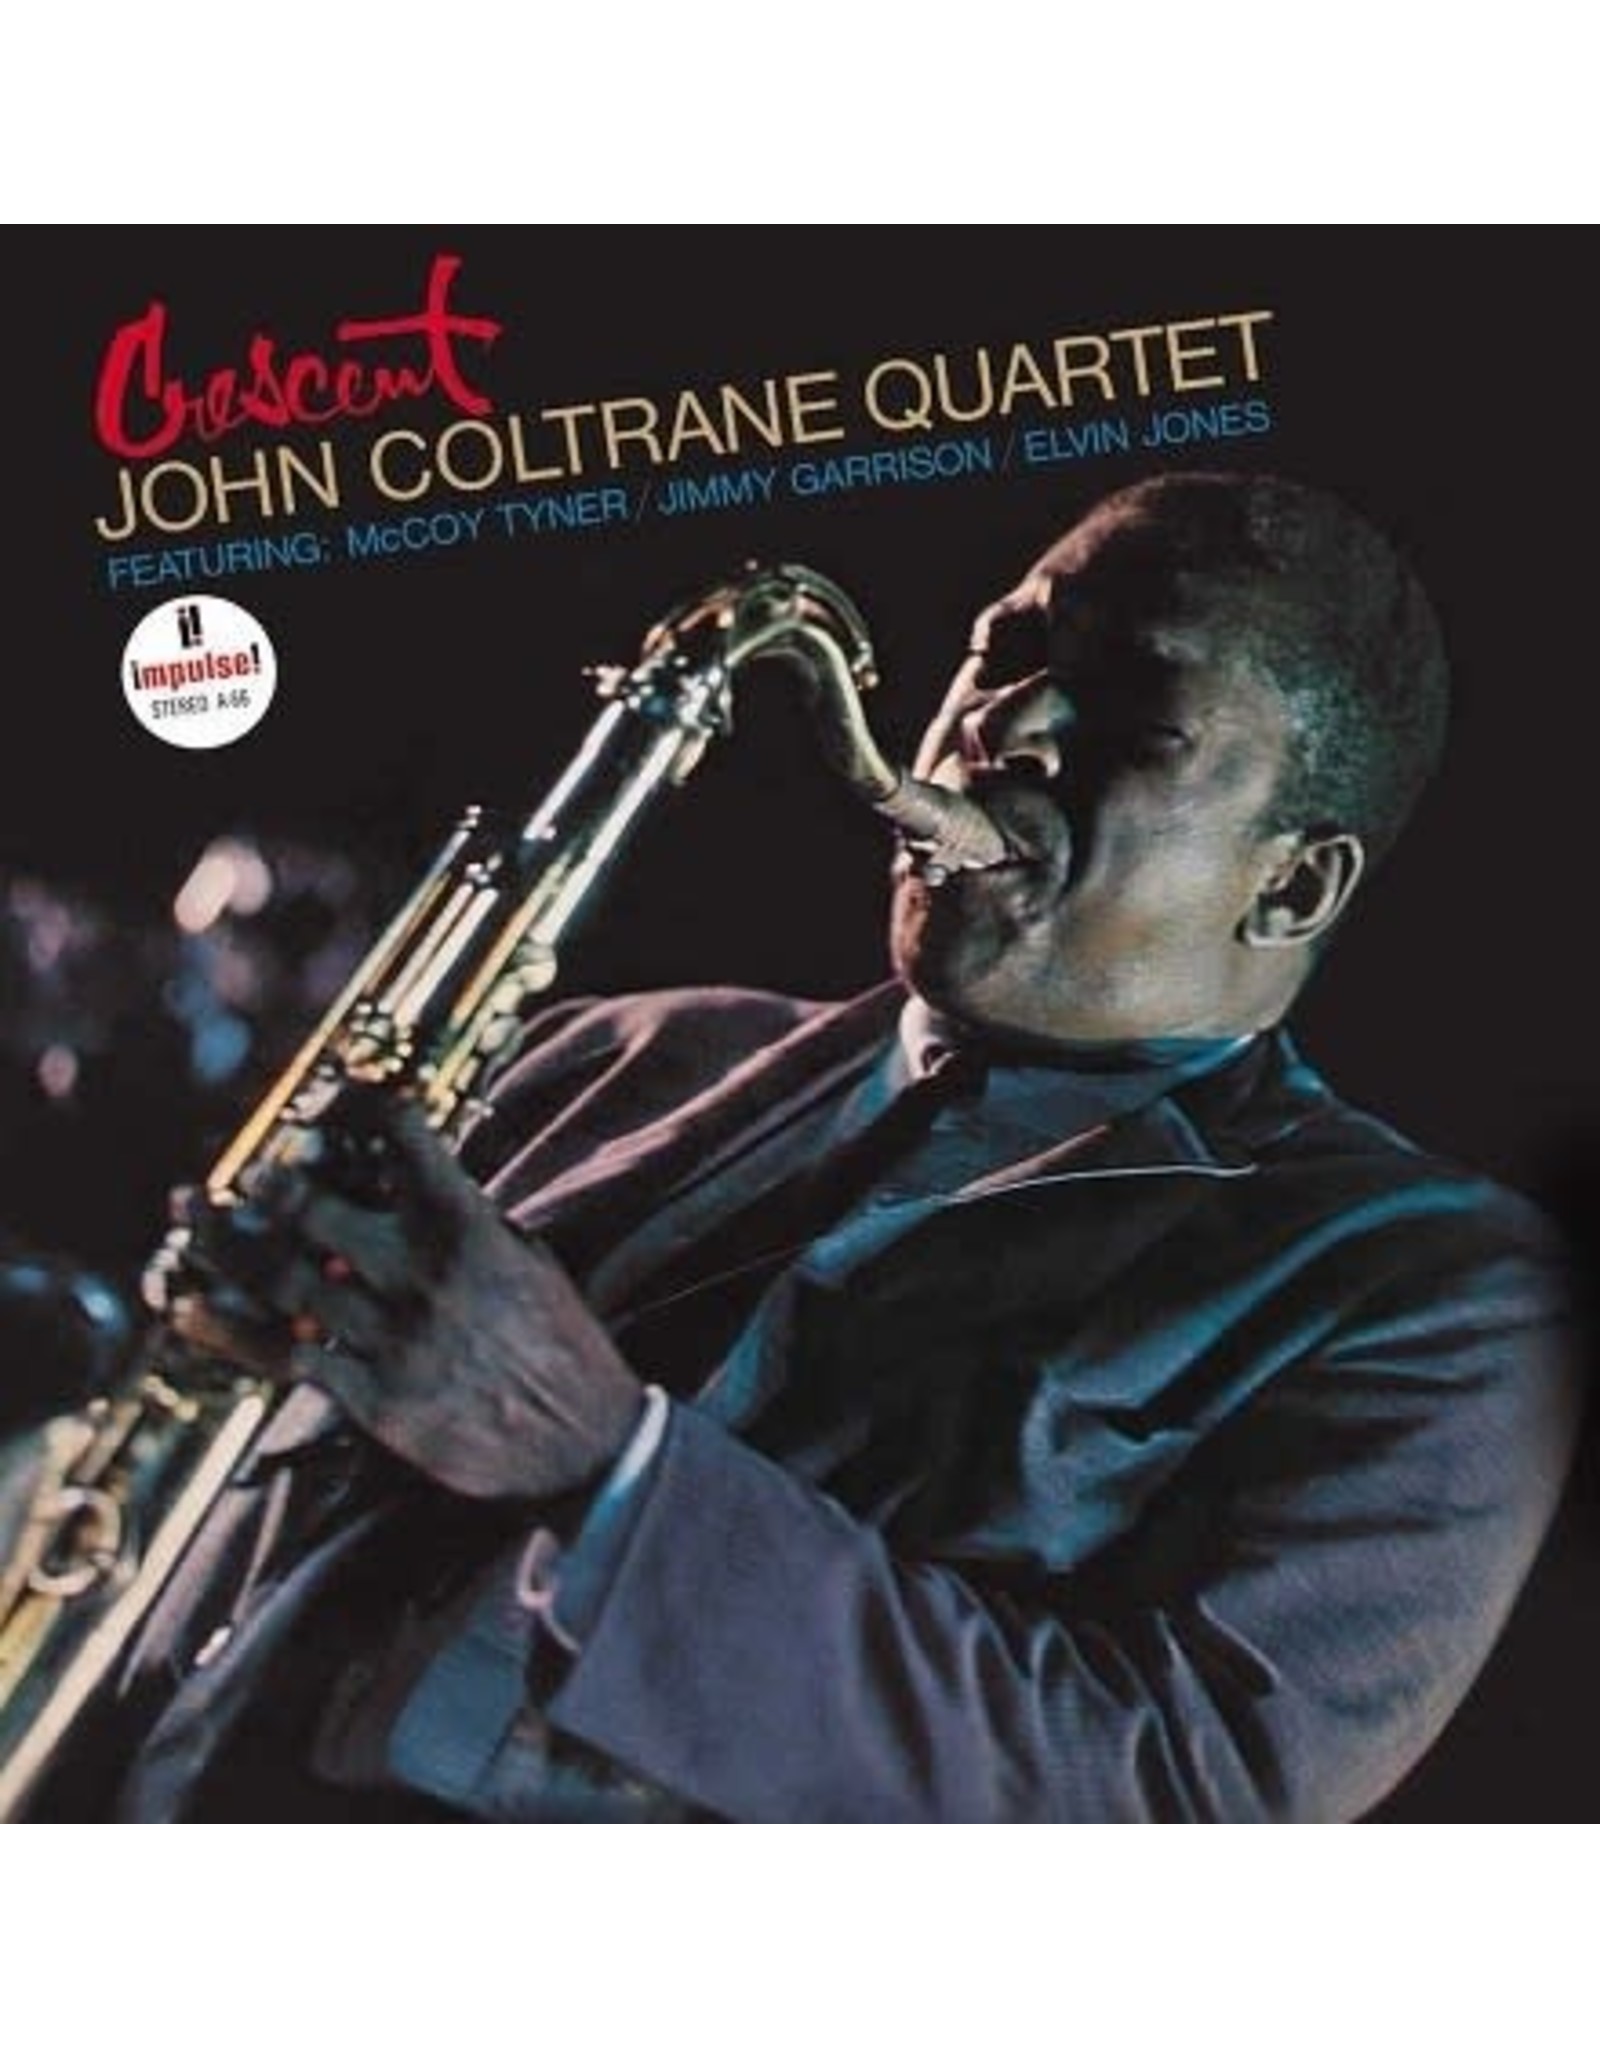 Impulse Coltrane, John Quartet: Crescent (Acoustic Sounds Series/180g/Gatefold) LP